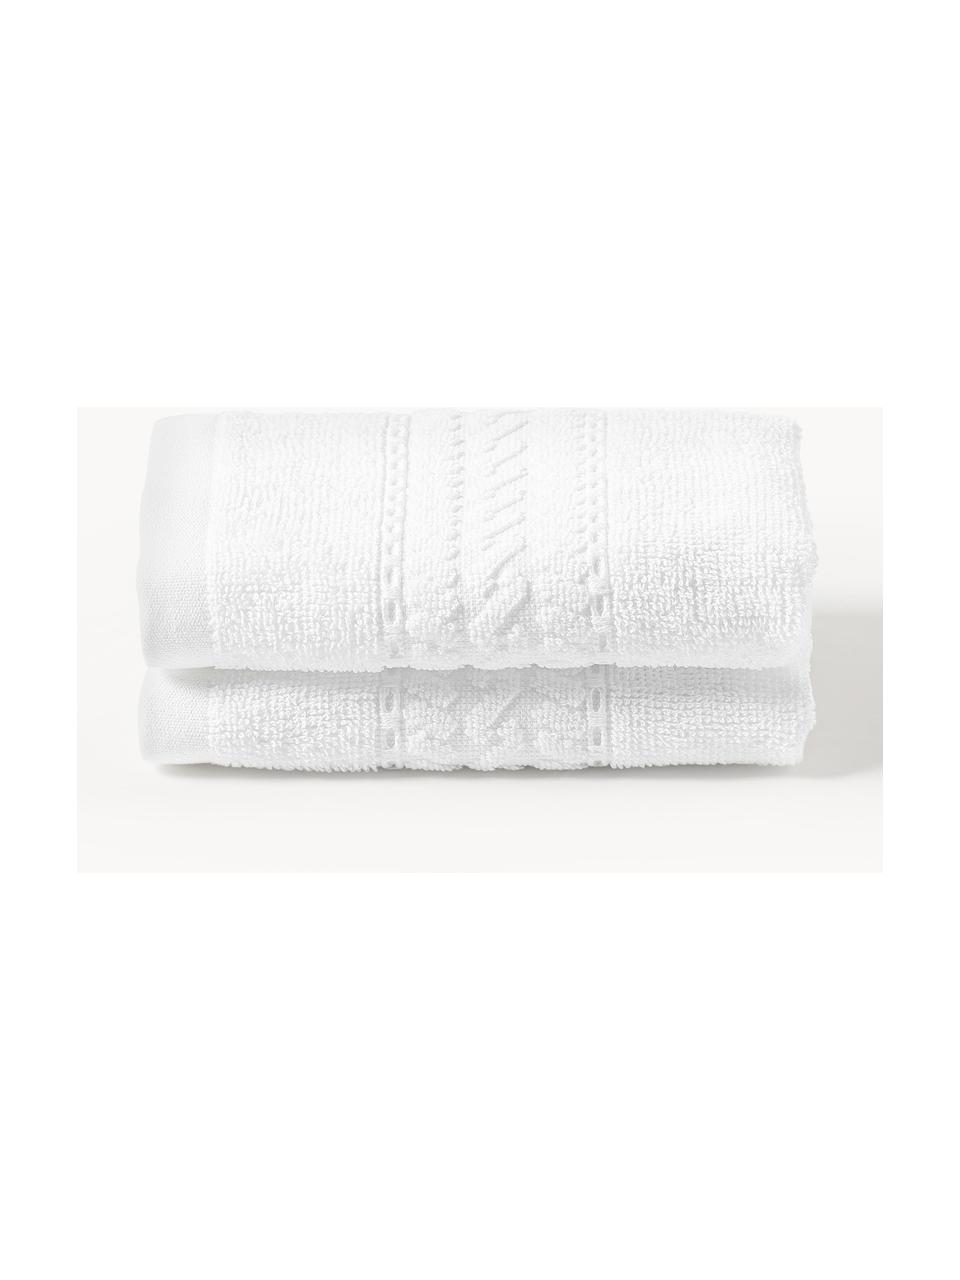 Ručník Cordelia, různé velikosti, 100 % bavlna, Bílá, Ručník, Š 50 cm, D 100 cm, 2 ks